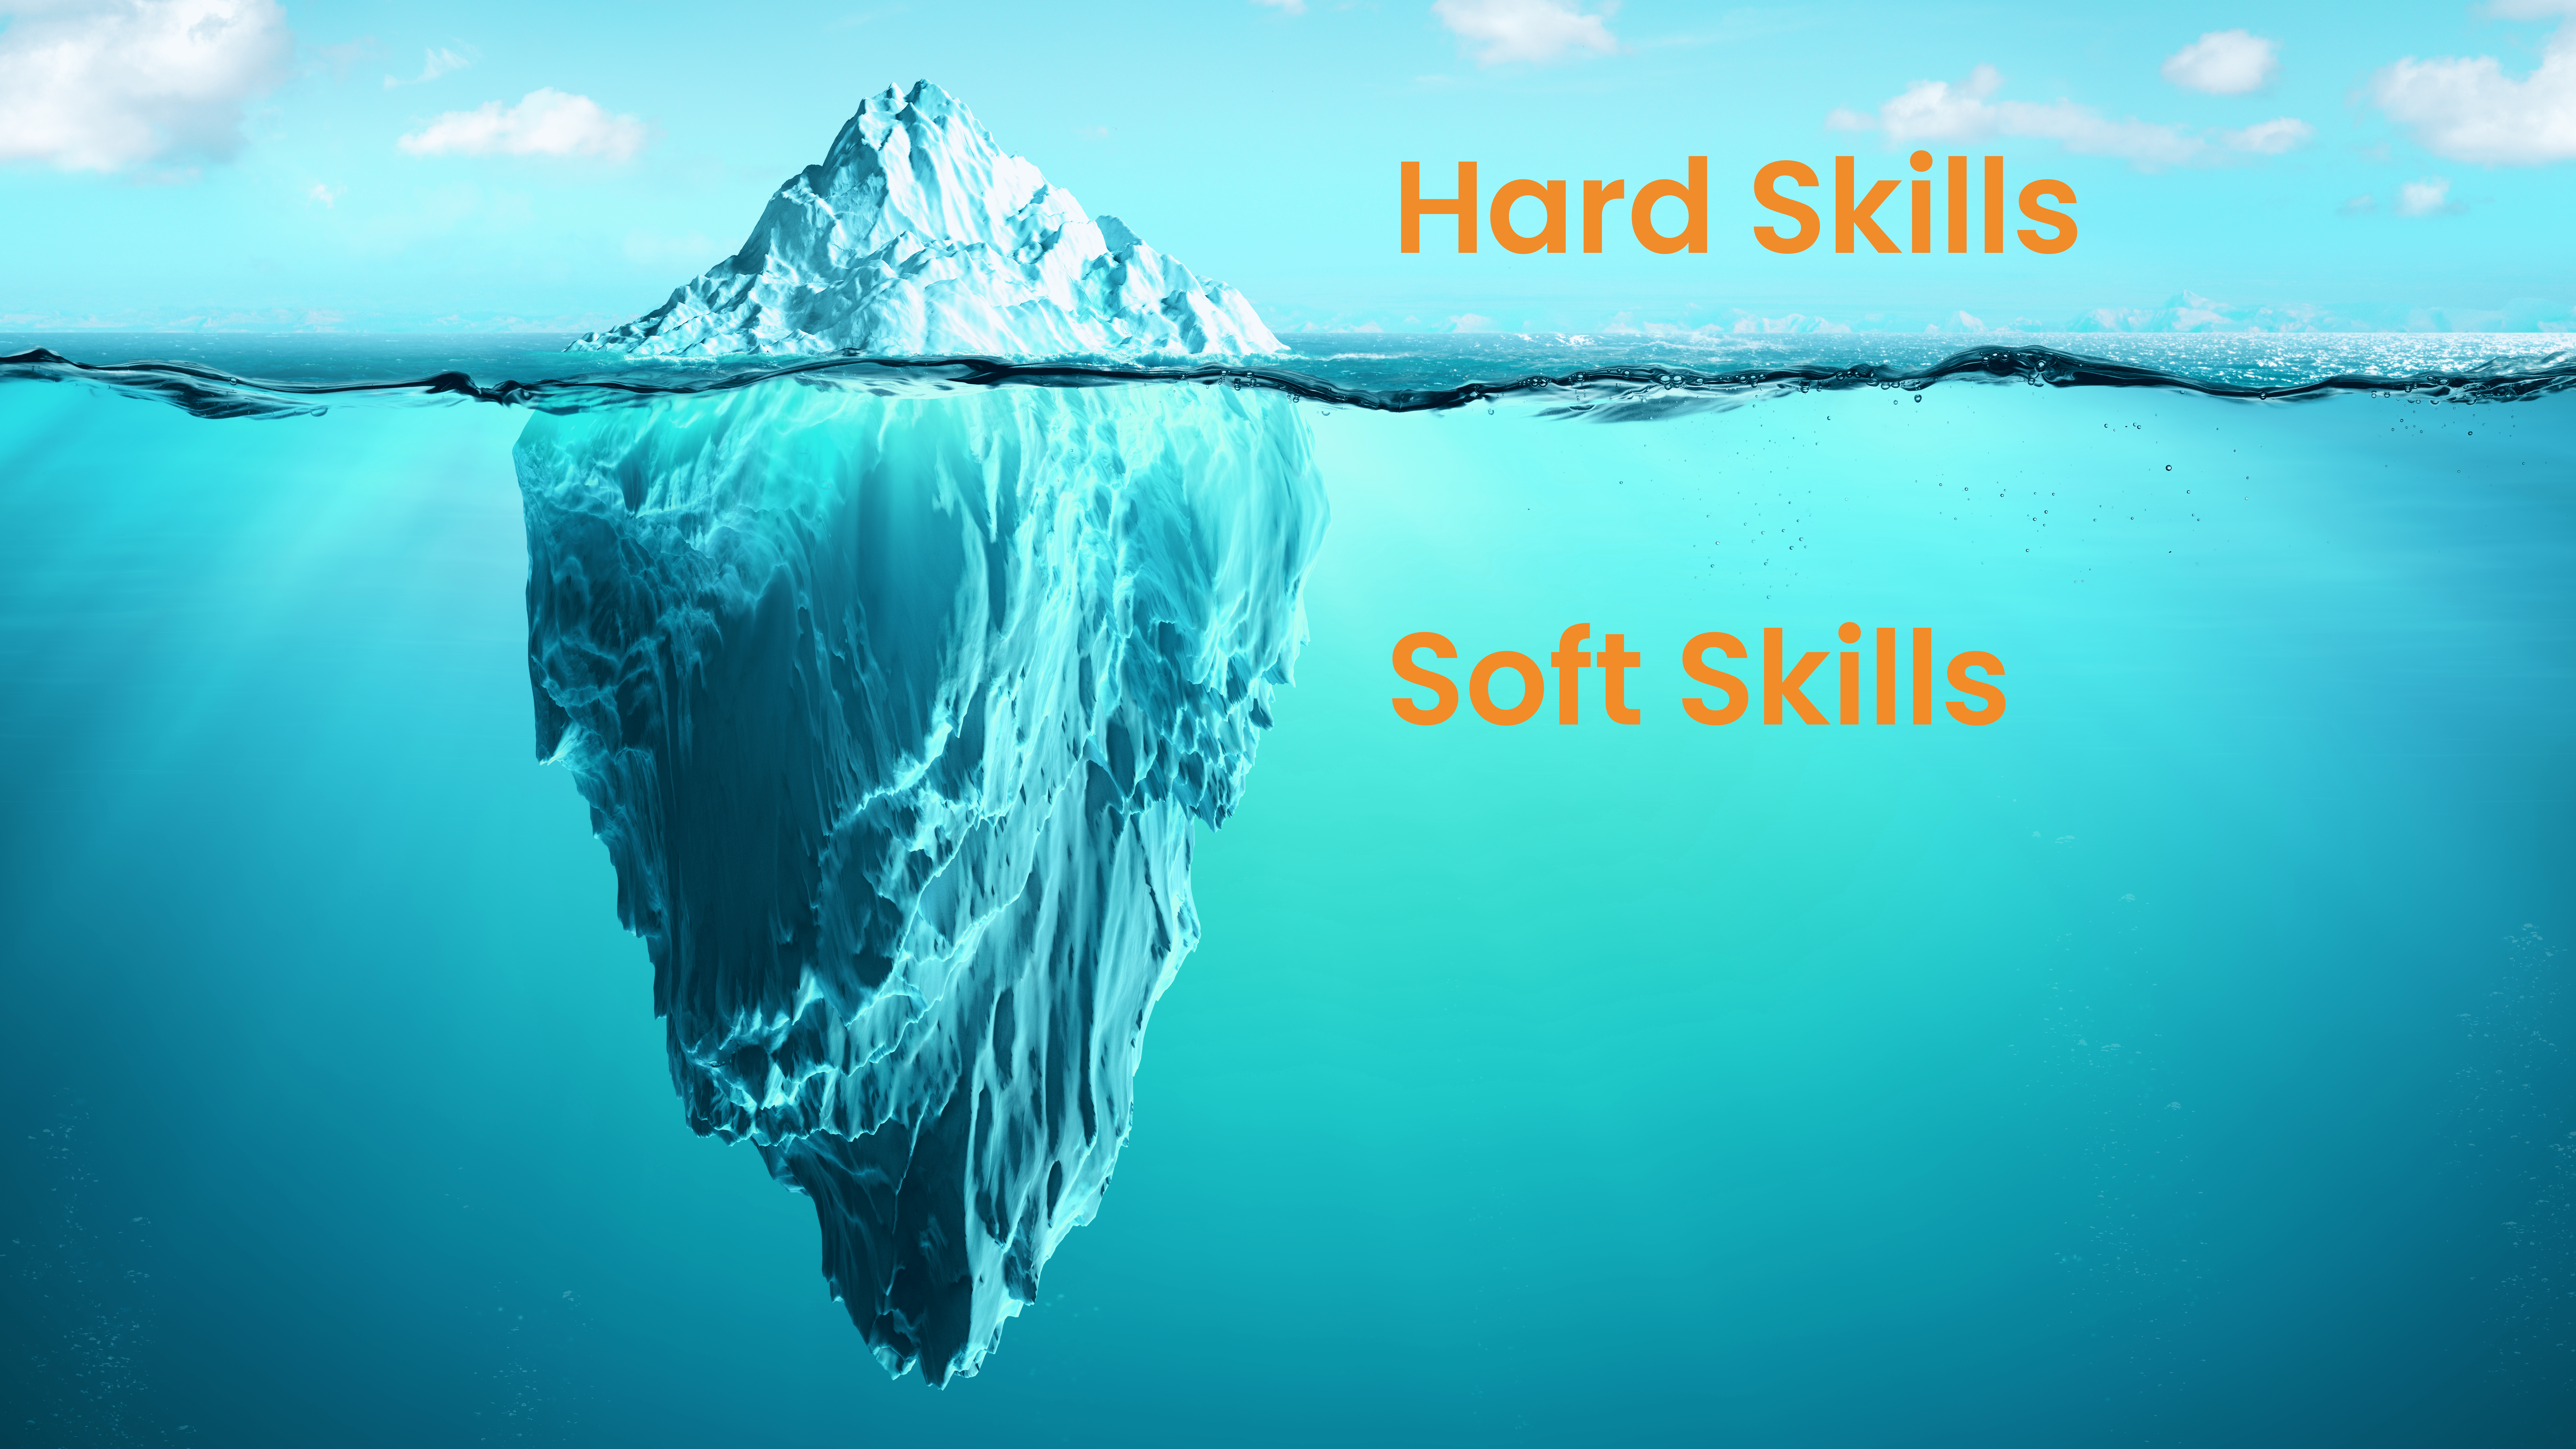 Iceberg che mostra le hard skills rappresentate dalla punta e le soft skills rappresentate dal resto del corpo nascosto sott'acqua.